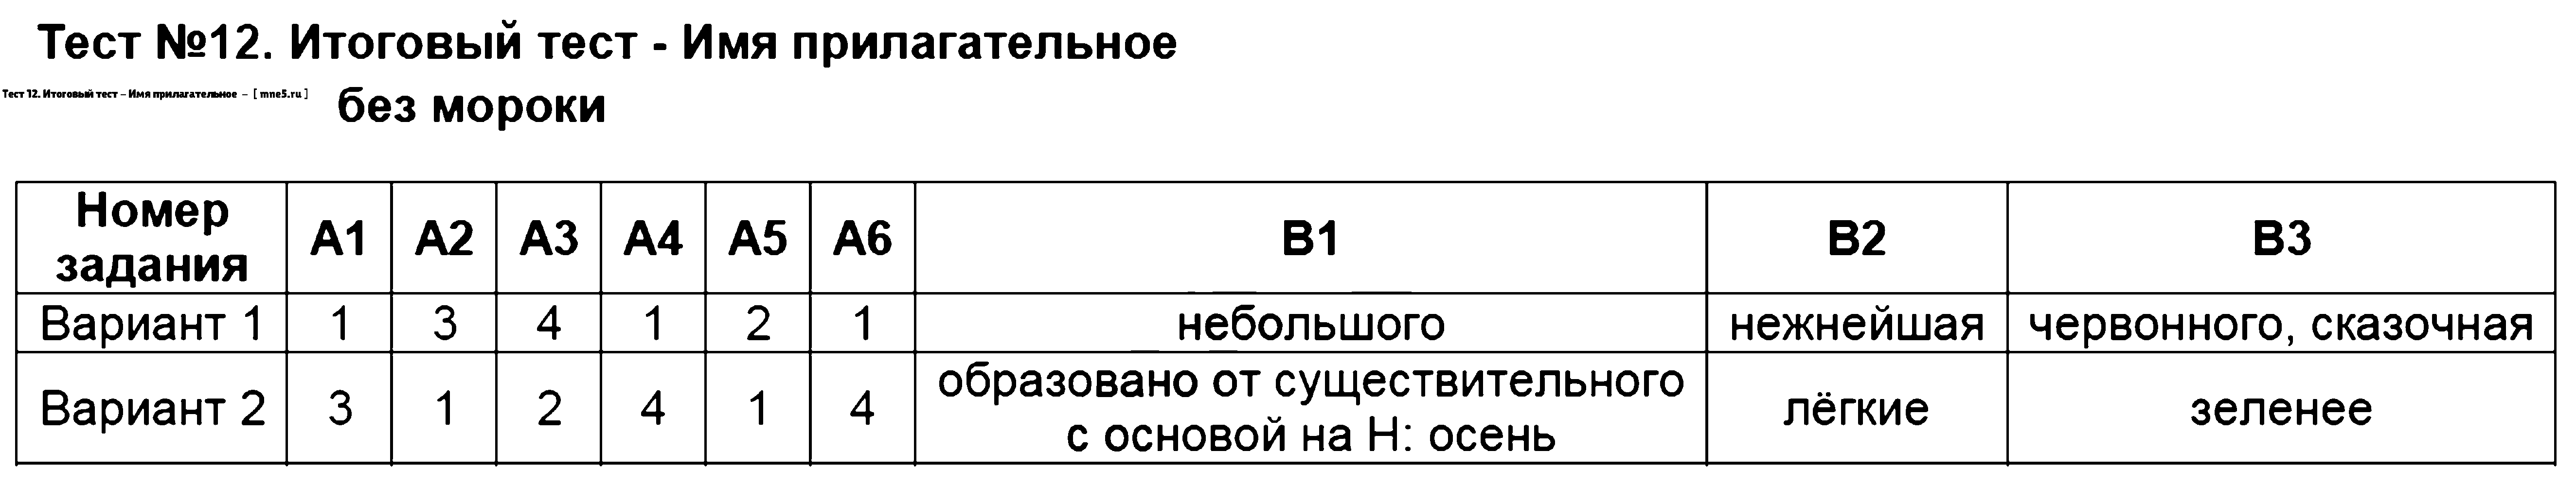 ГДЗ Русский язык 6 класс - Тест 12. Итоговый тест - Имя прилагательное